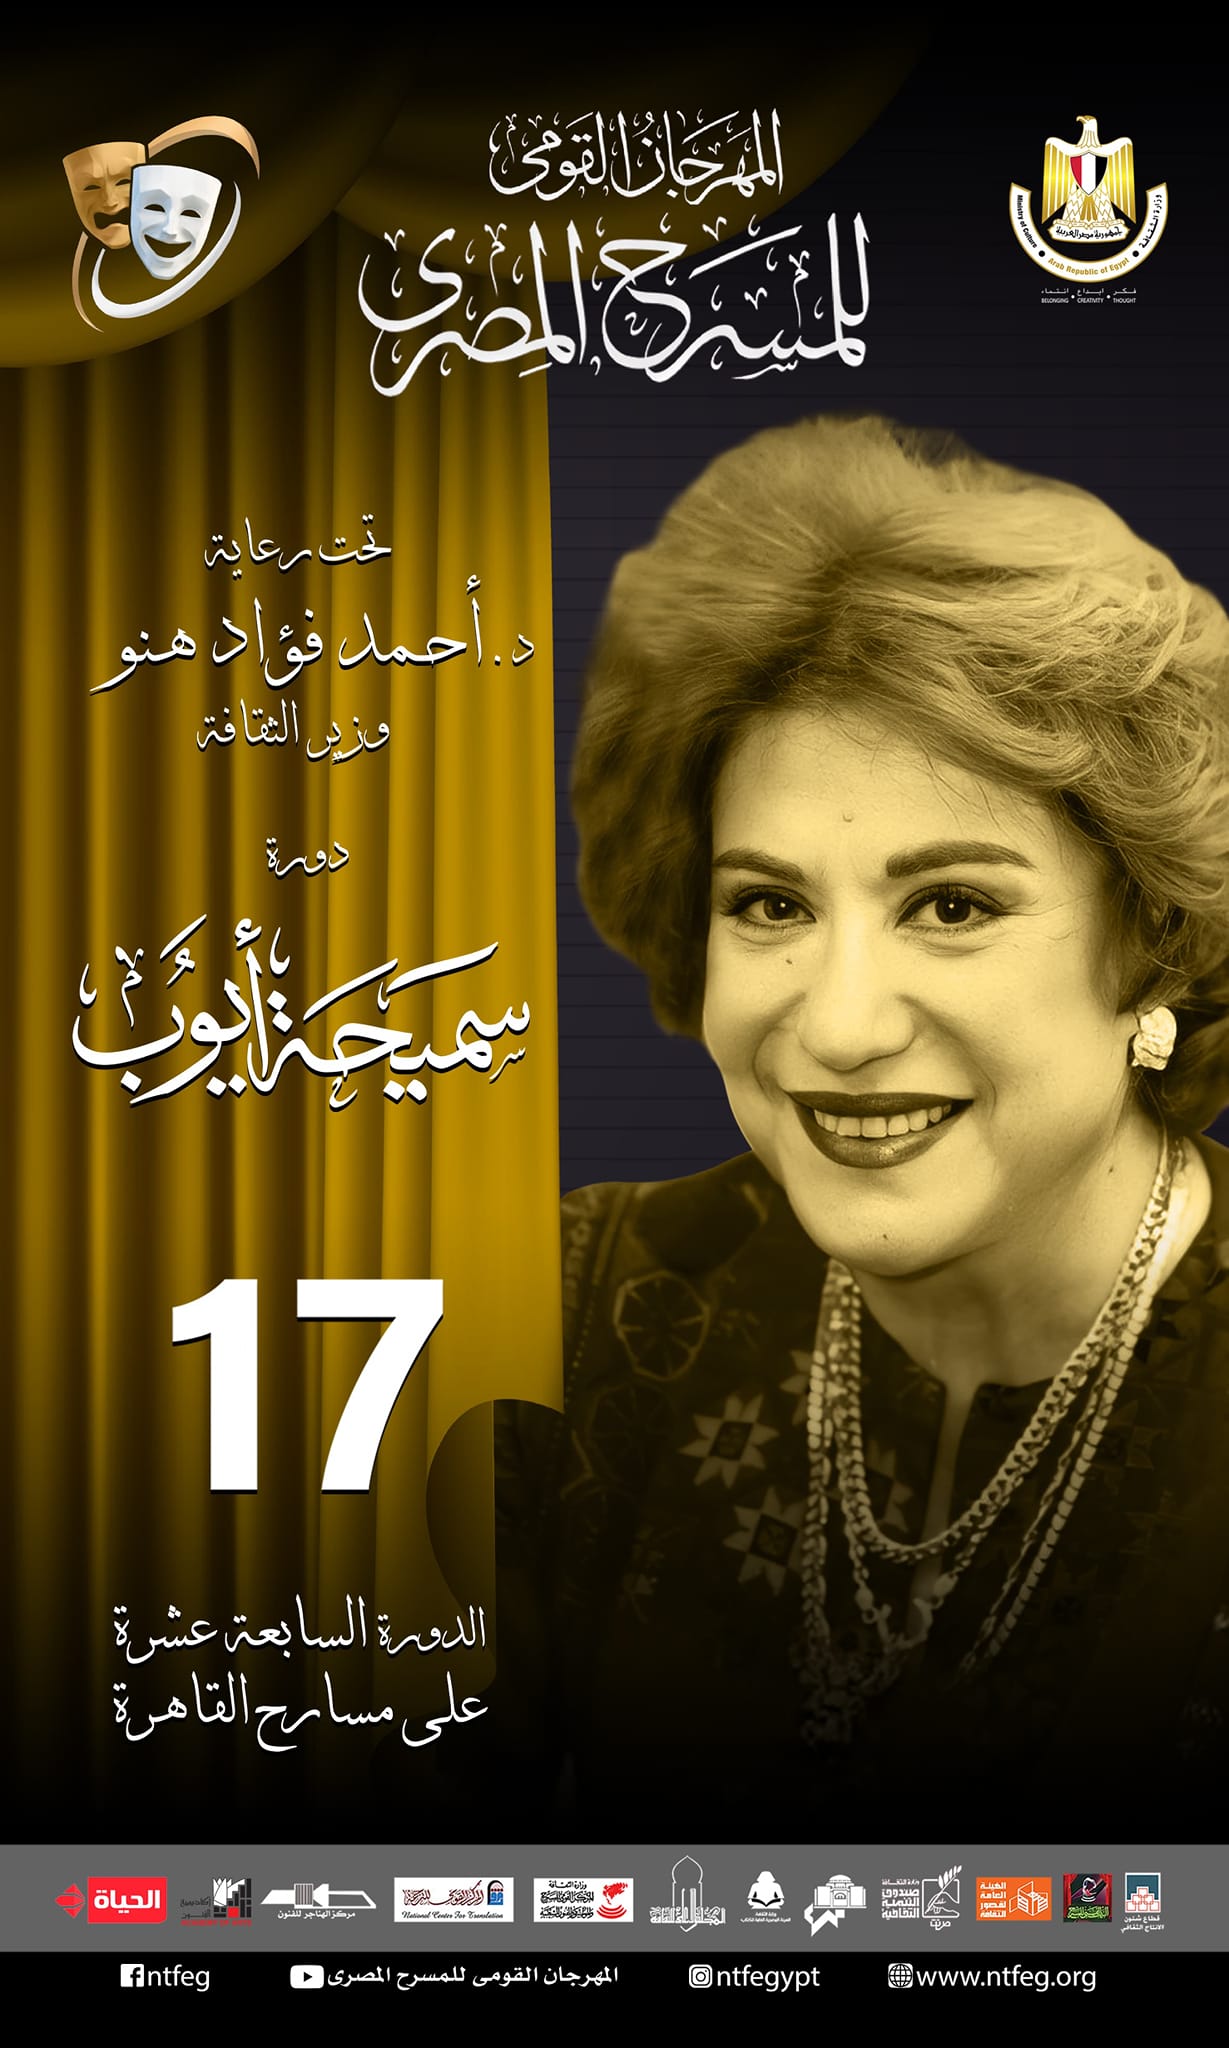 مهرجان المسرح المصري يعلن قائمة العروض المسرحية المشاركة في دورته الـ 17